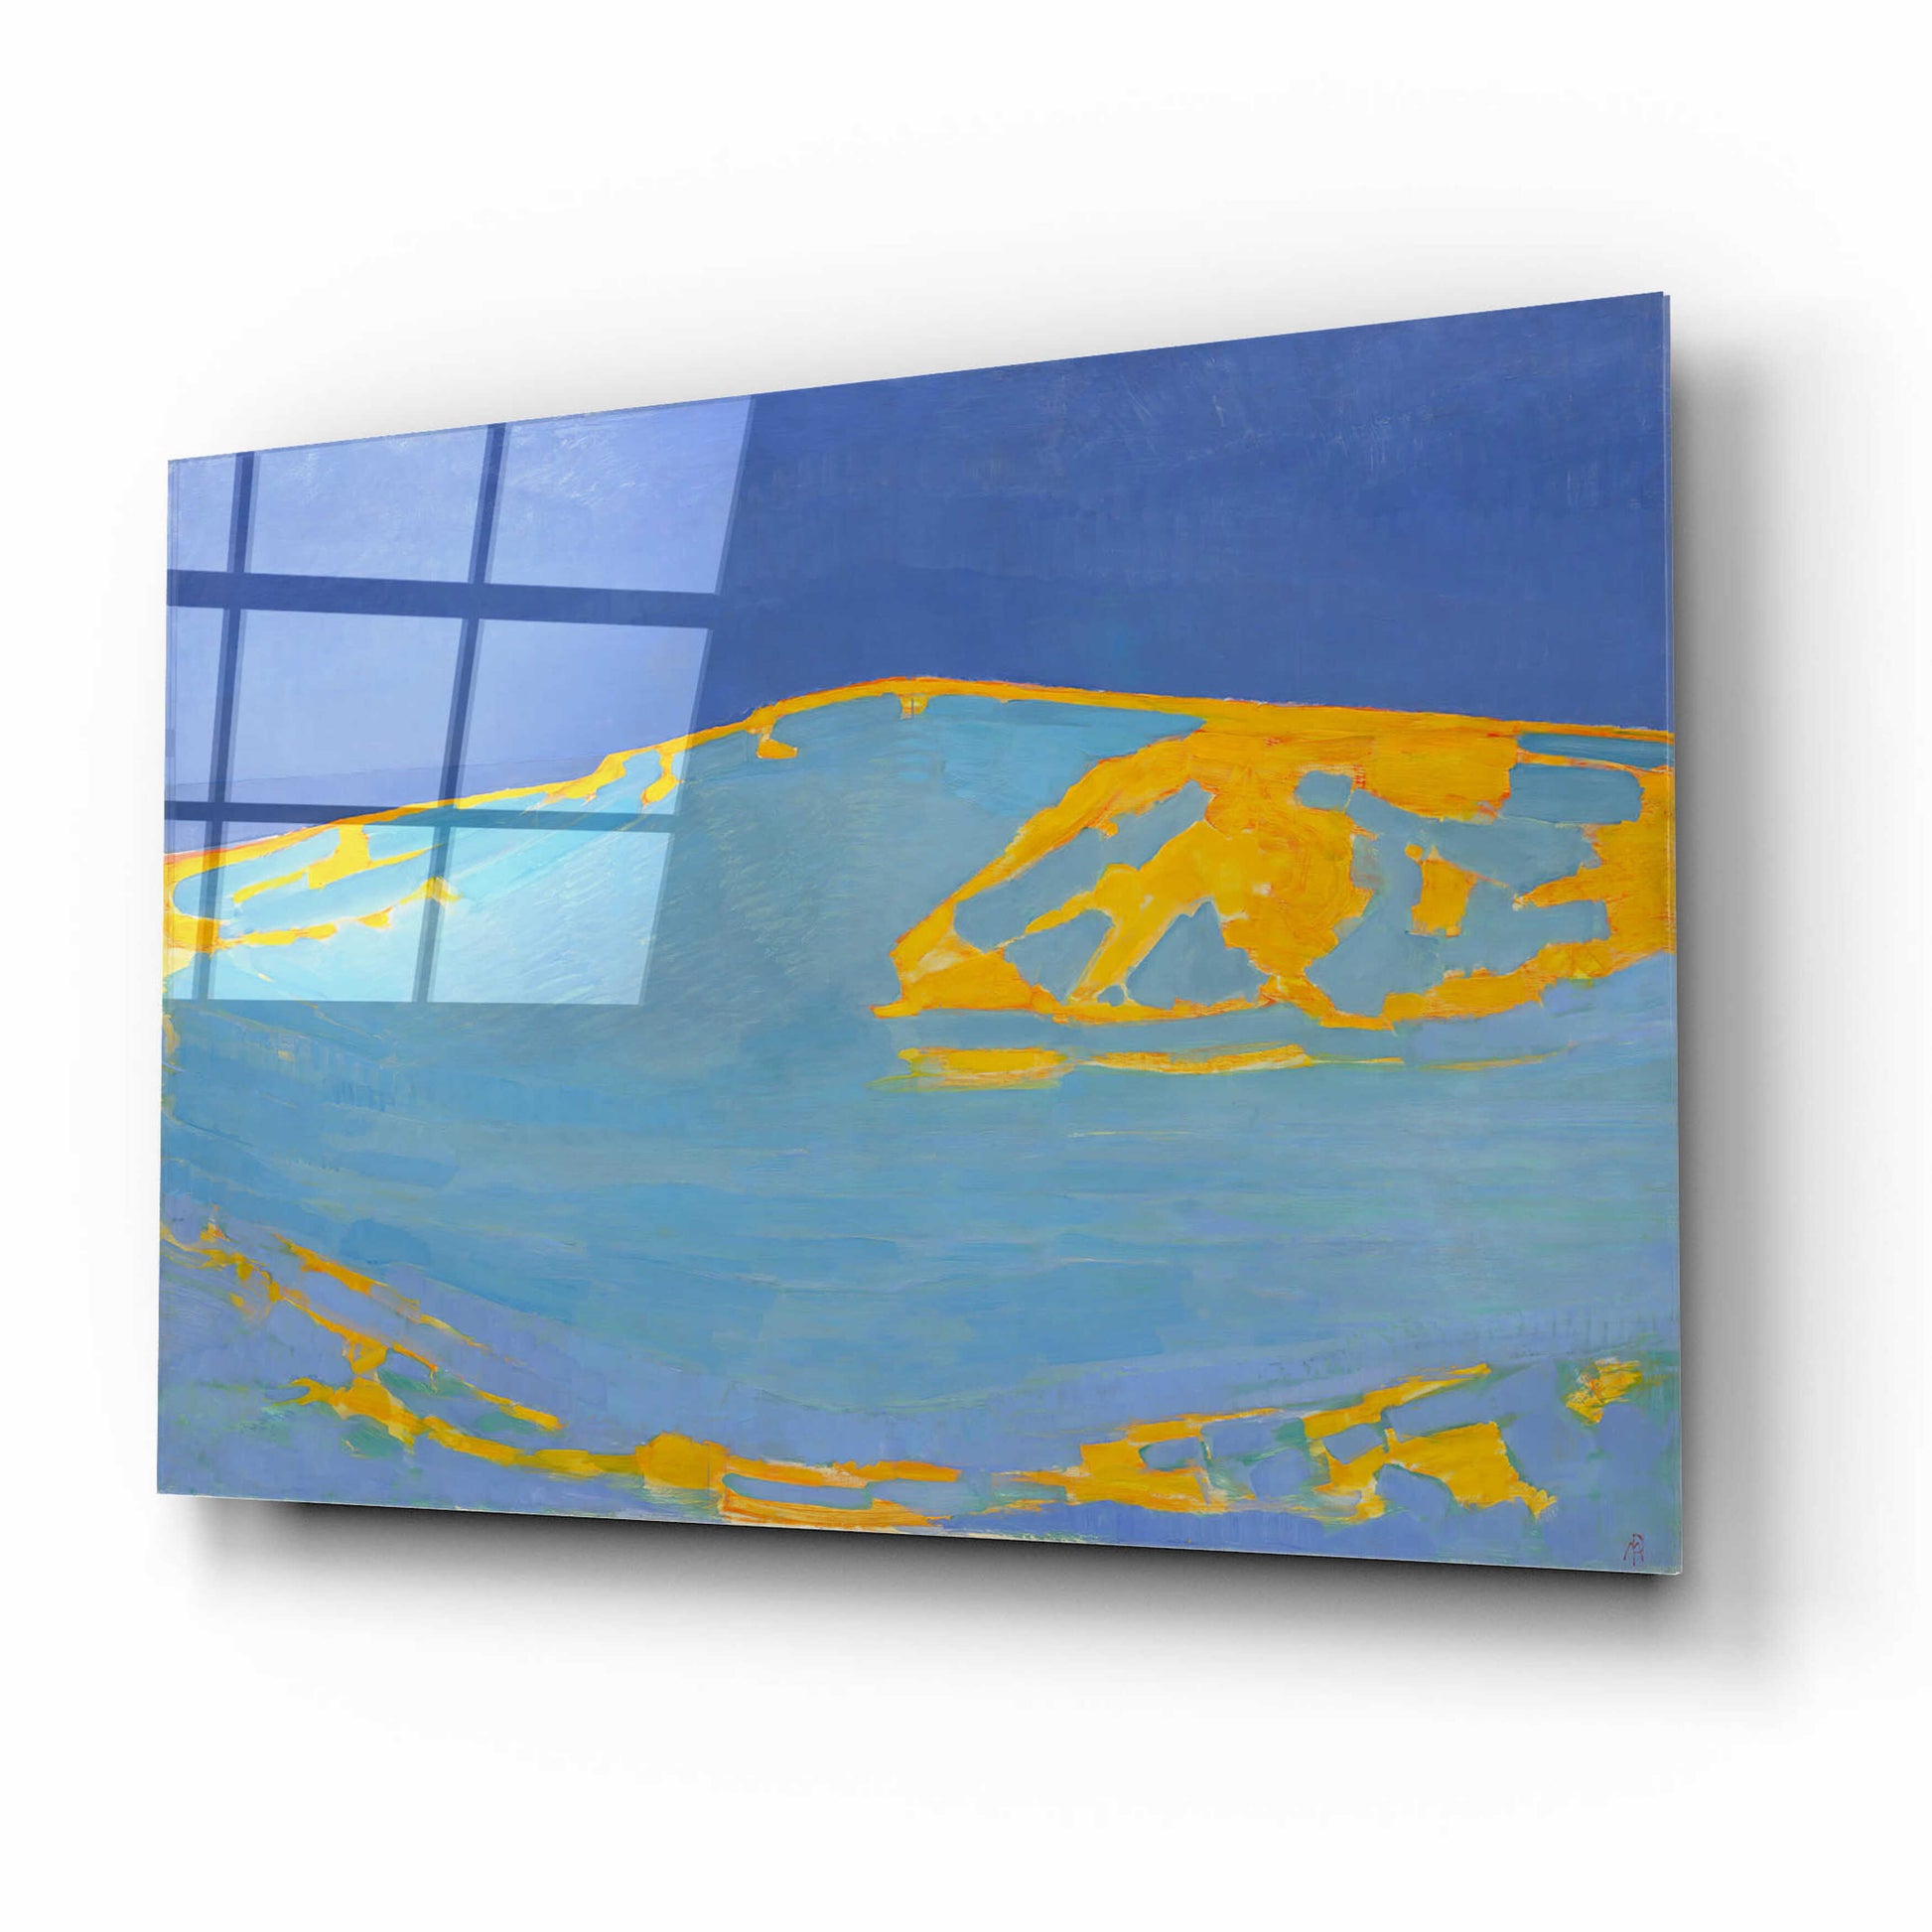 Epic Art 'Summer, Dune in Zeeland, 1910' by Piet Mondrian, Acrylic Glass Wall Art,16x12